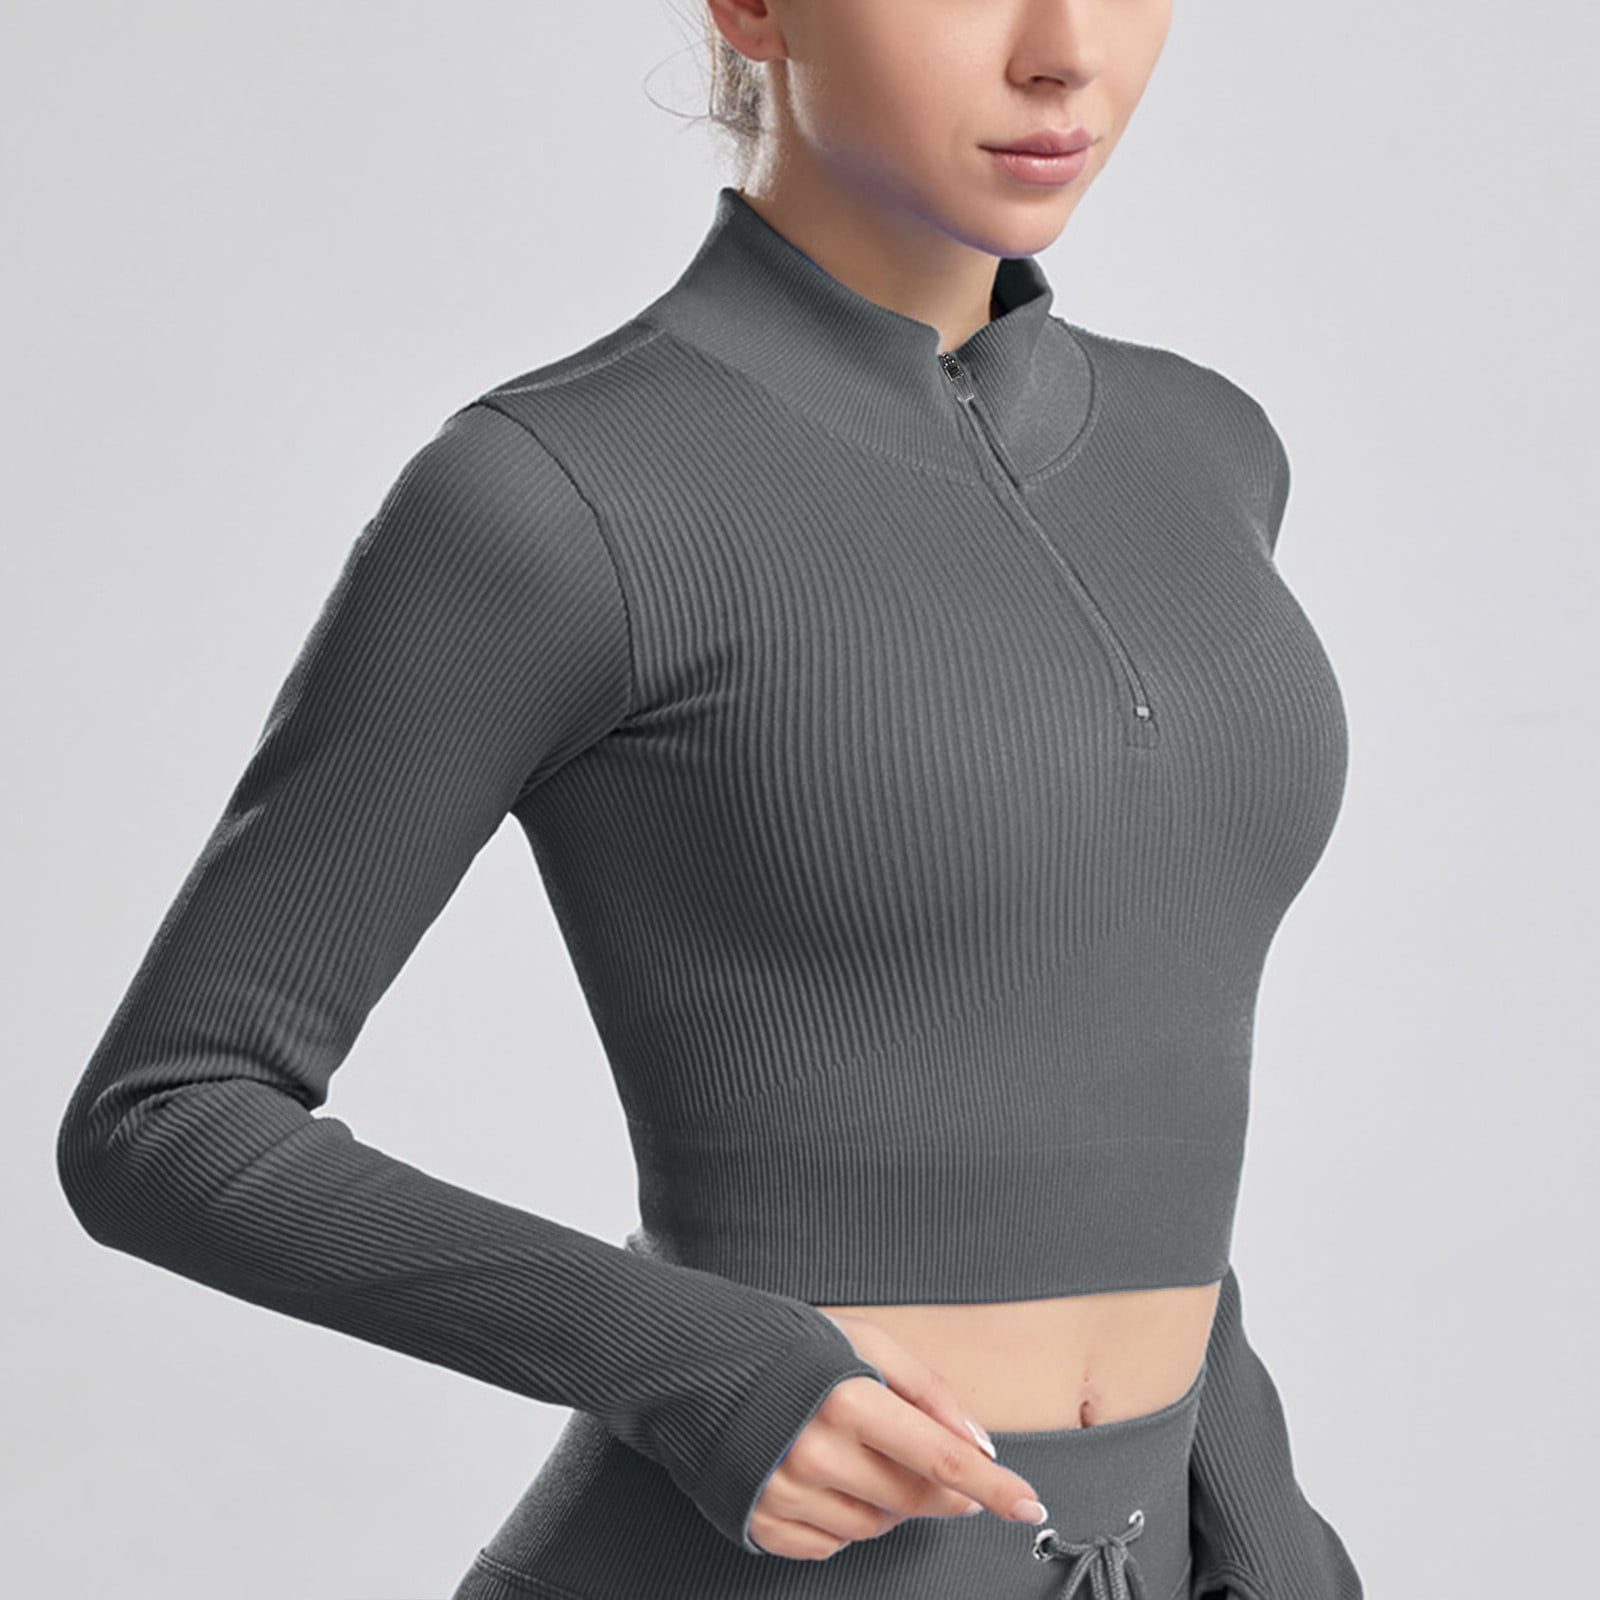 NEGJ Women's Sexy Tops V Neck Long Sleeve Half Zipper Crop Shirts Blouse